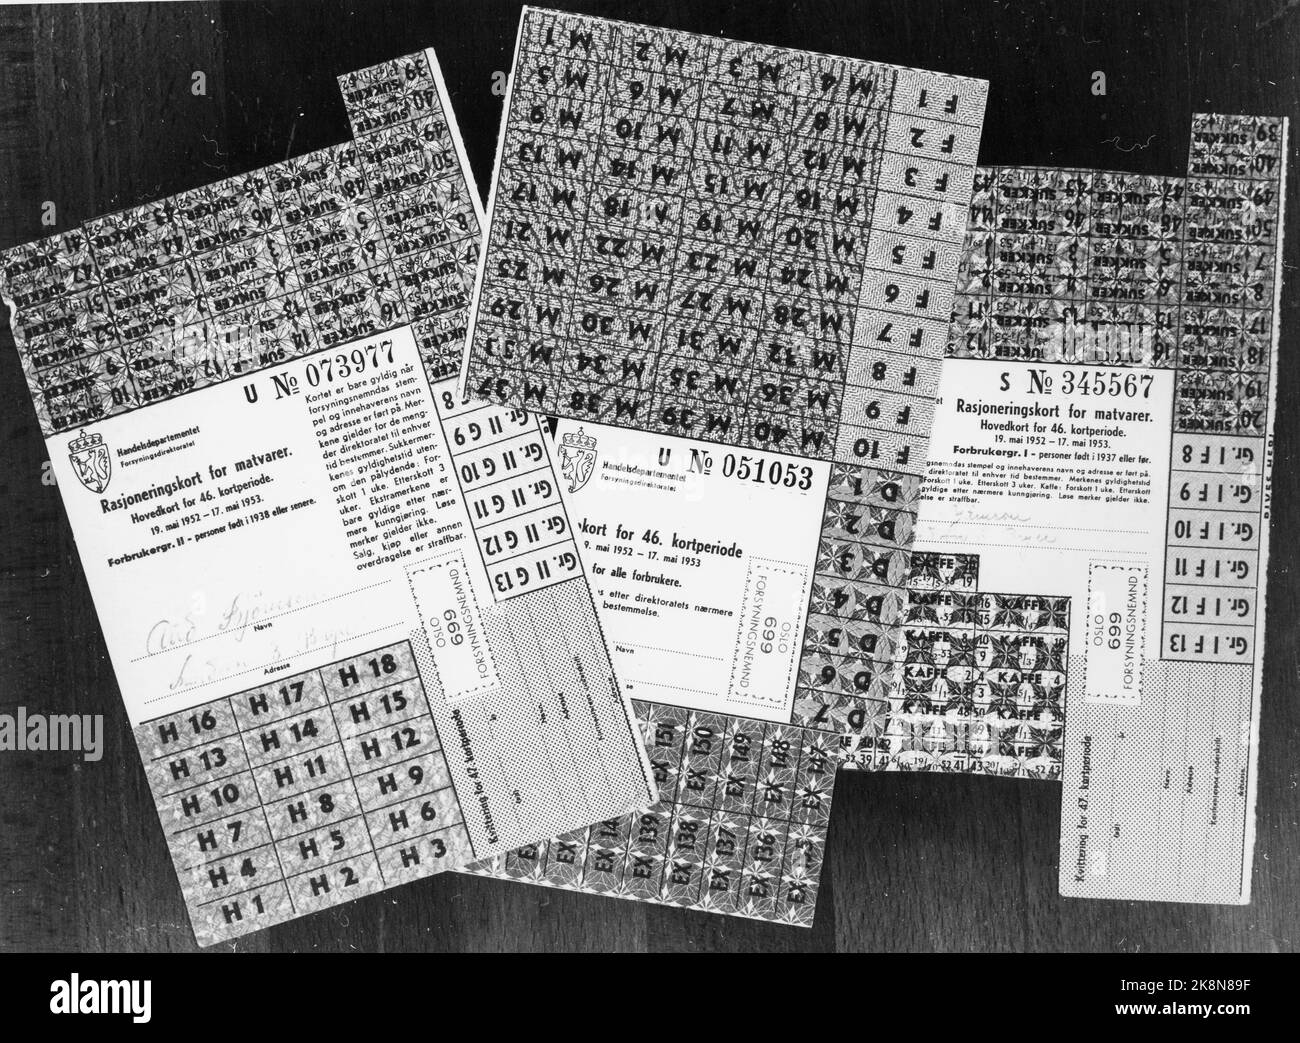 Oslo 1952. Rationnement : le rationnement des marchandises a duré longtemps après la guerre. Voici des cartes de ration pour les aliments, émises pour la période du 19 mai 1952 à 17 mai 1953. Le rationnement du café et du sucre a été levé en septembre 1952. Photo: NTB / NTB Banque D'Images